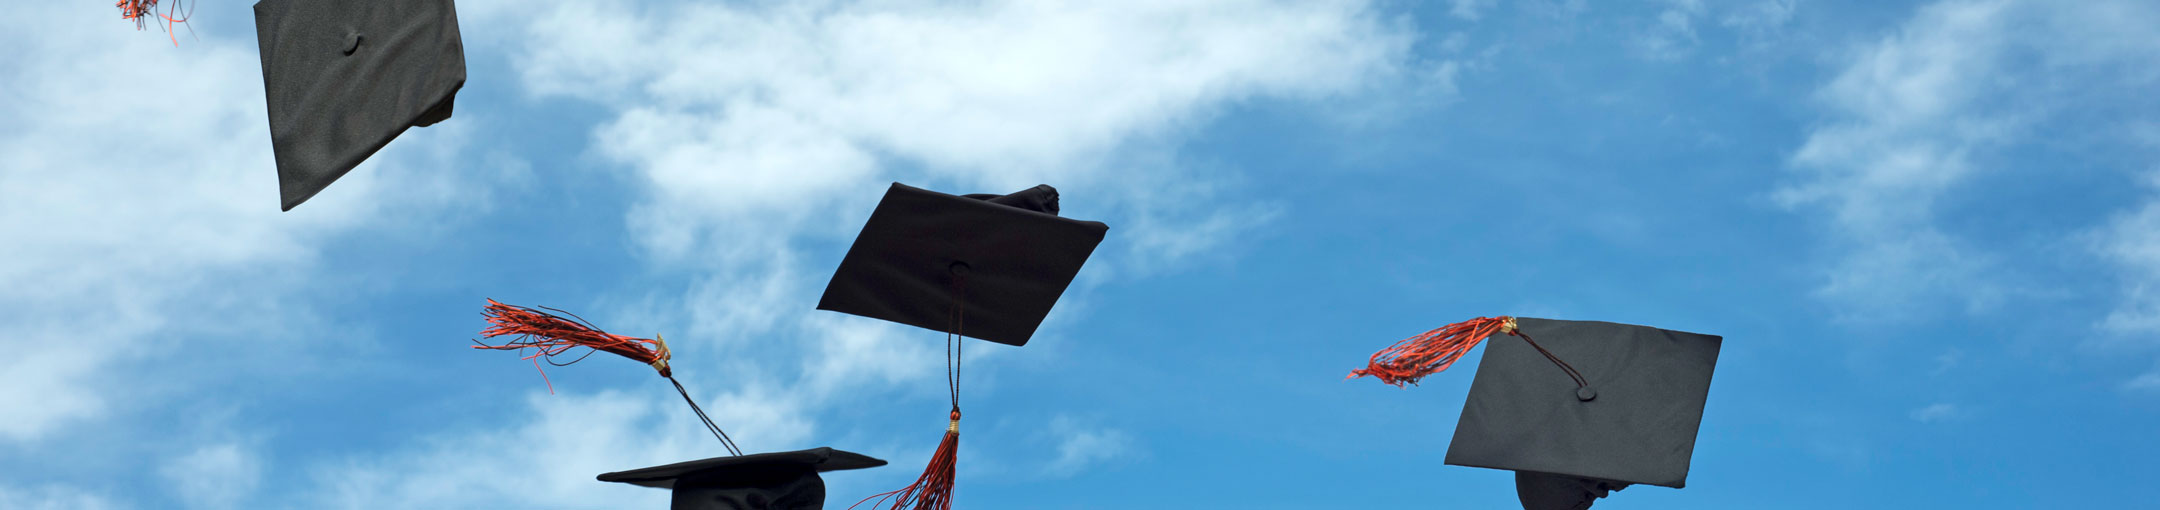 Graduation caps thrown in the air against a blue sky